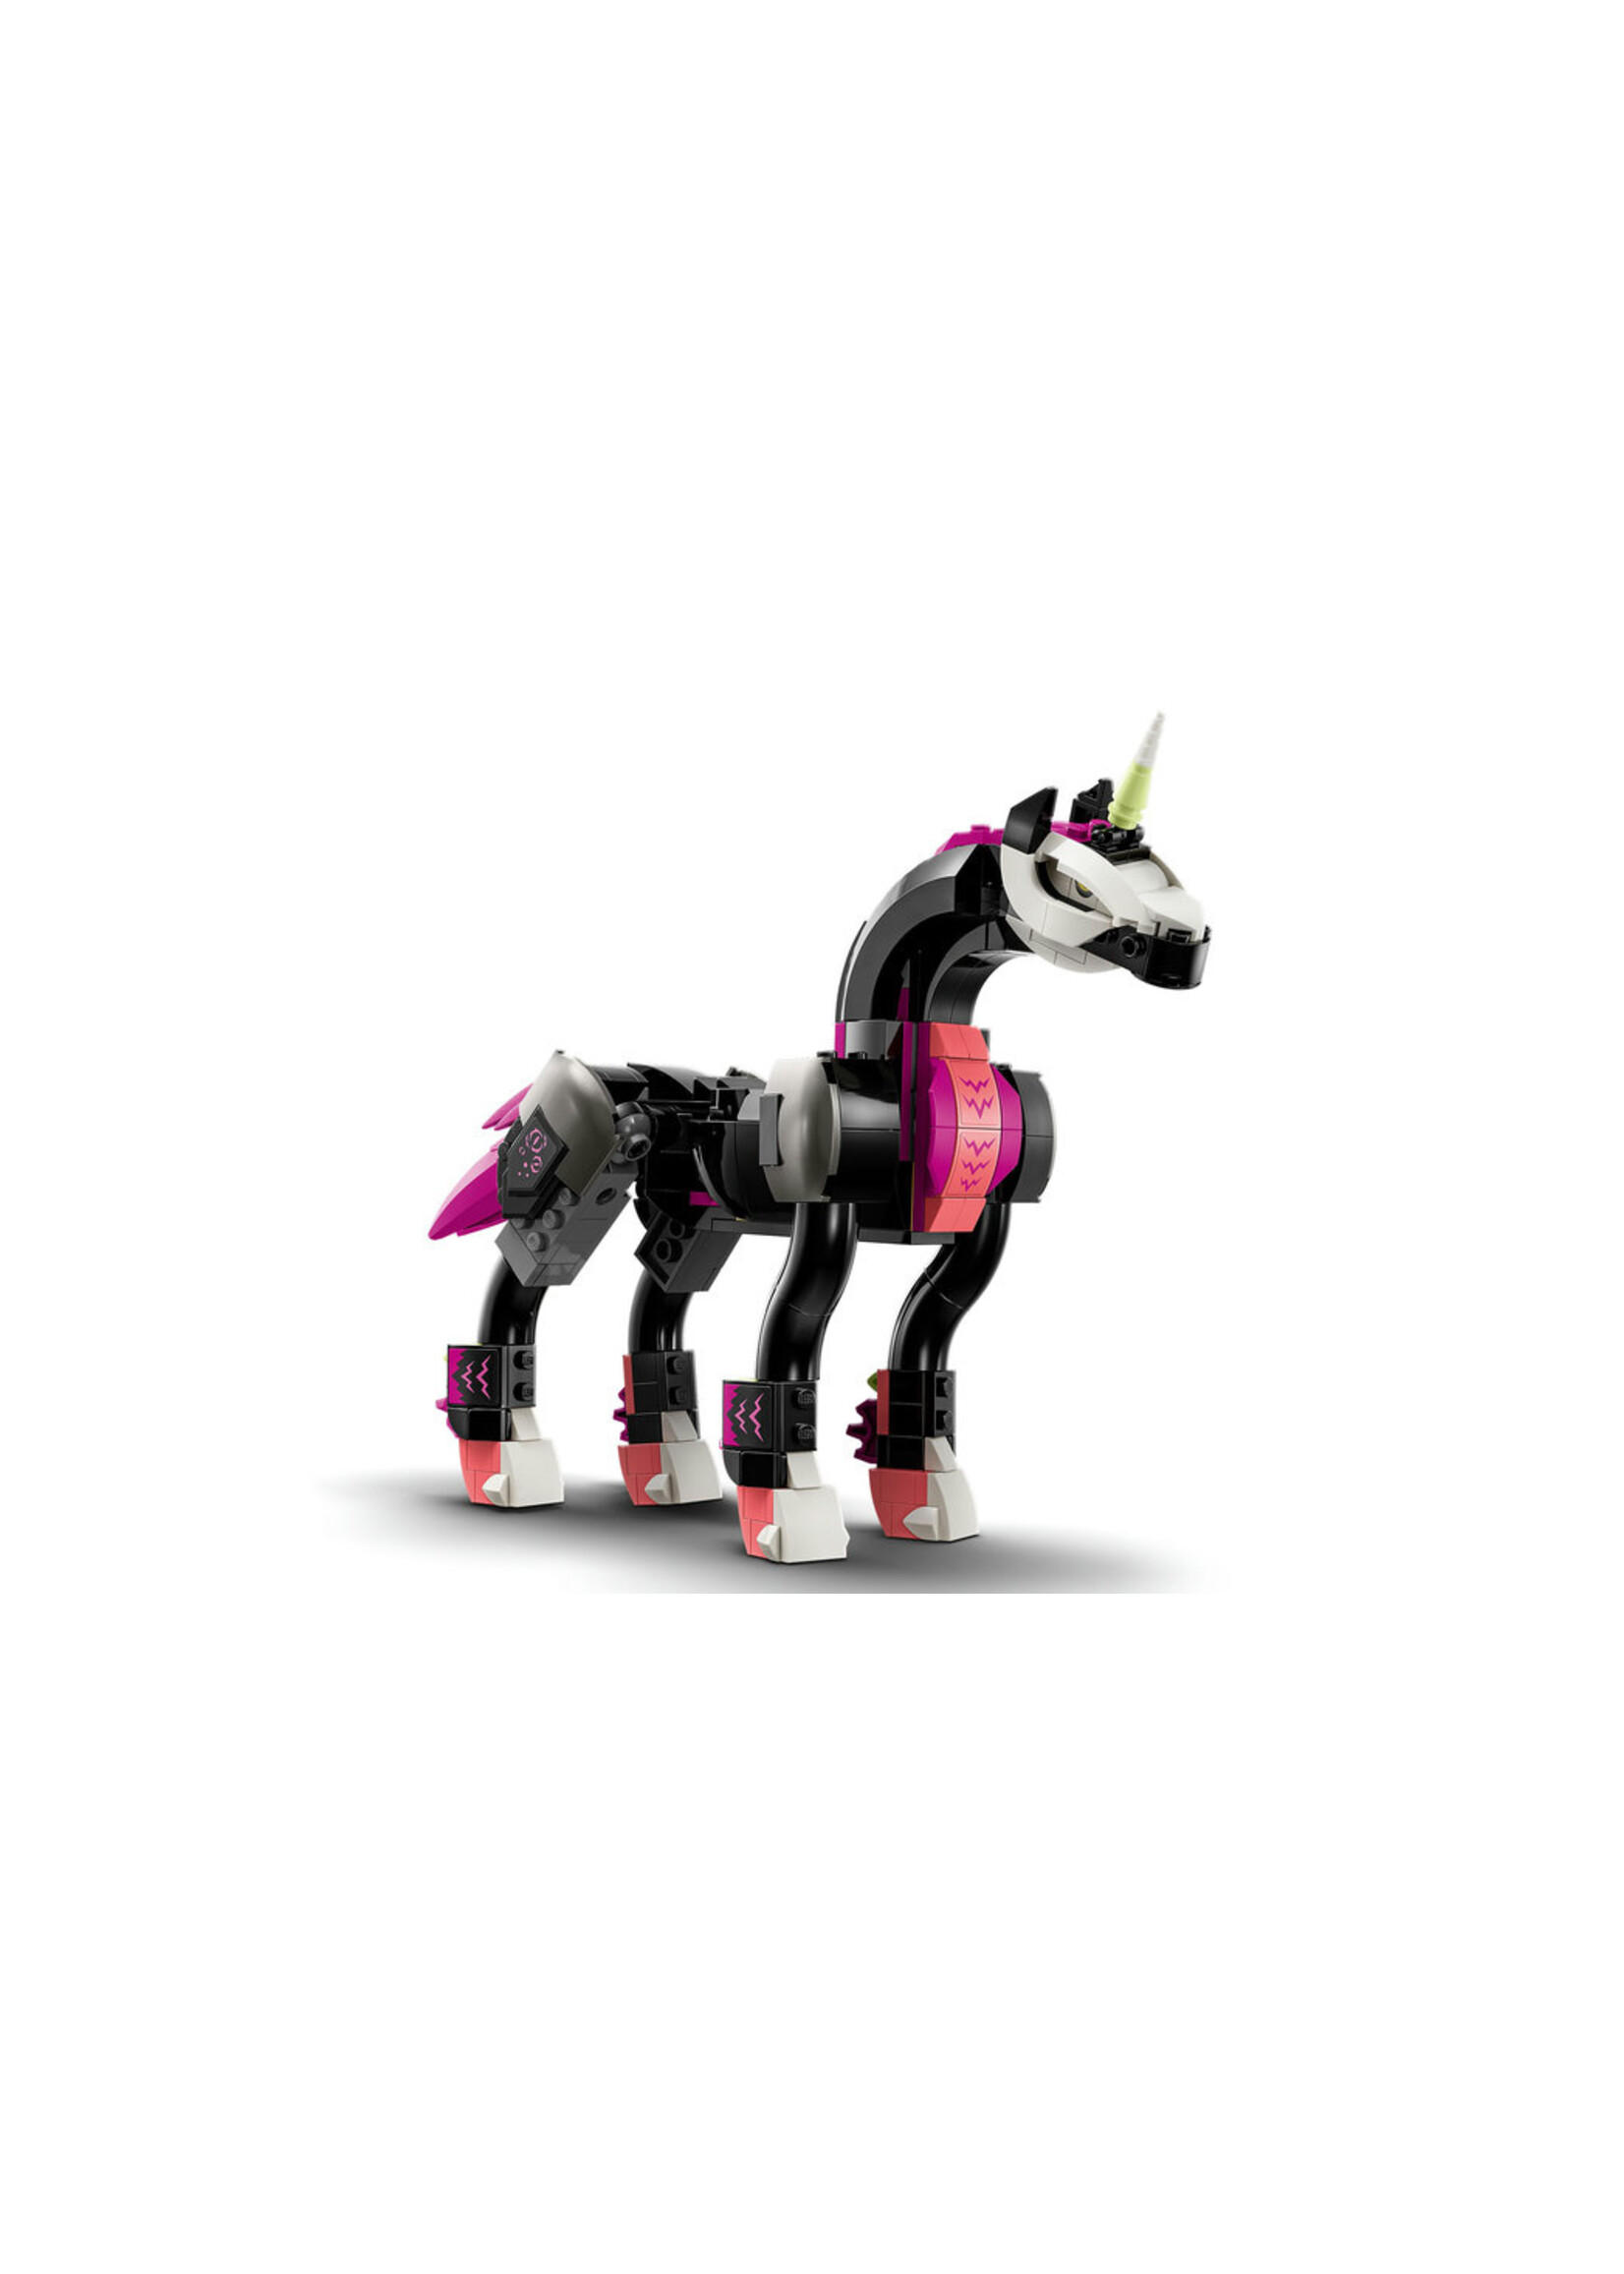 LEGO 71457 - Pegasus Flying Horse